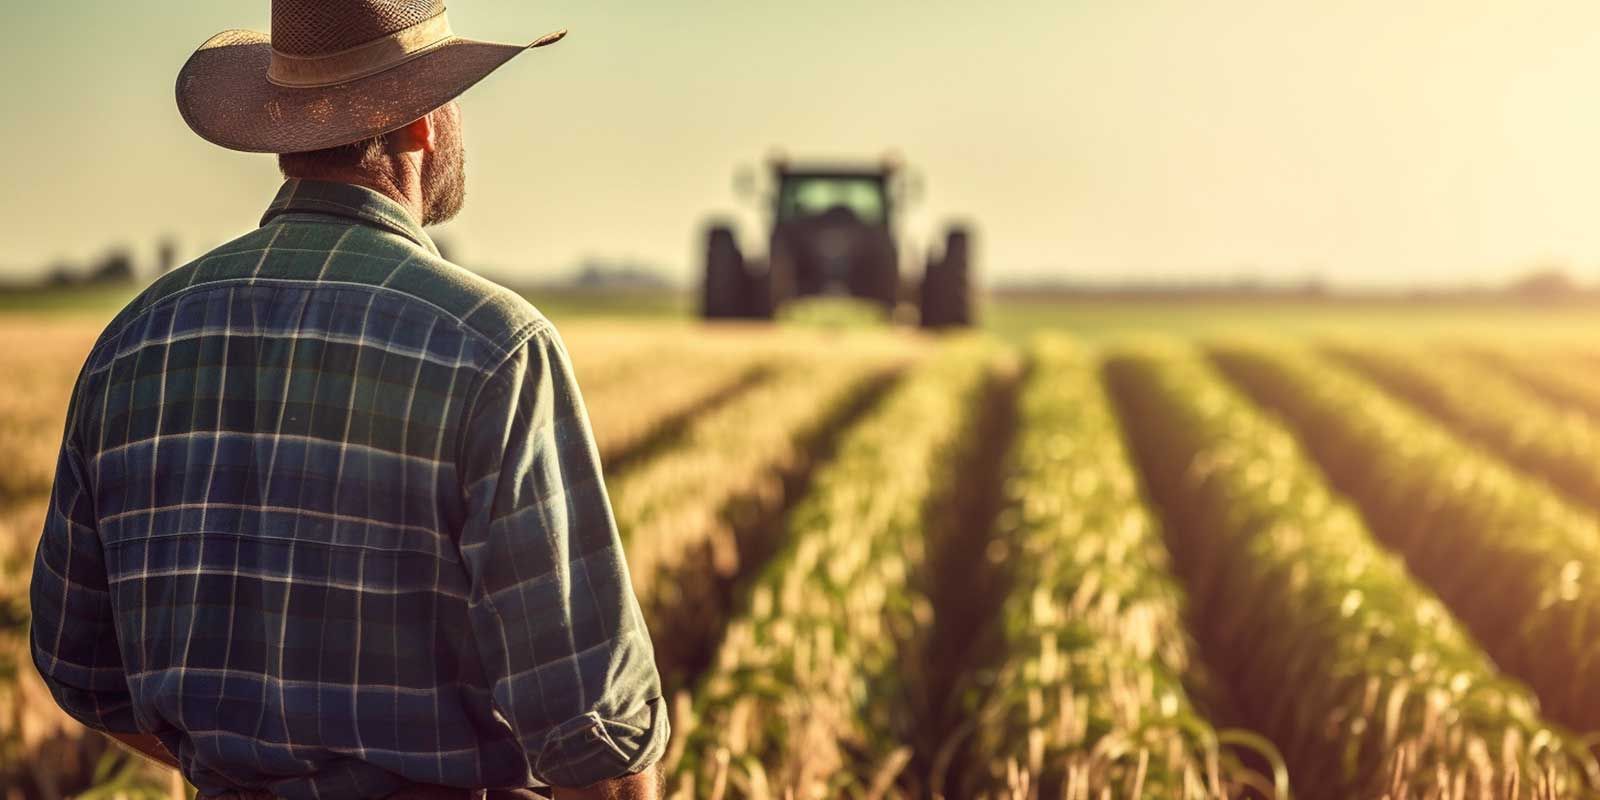 Cowboy mit Hut steht auf einem Getreidefeld und schaut zu einem Traktor